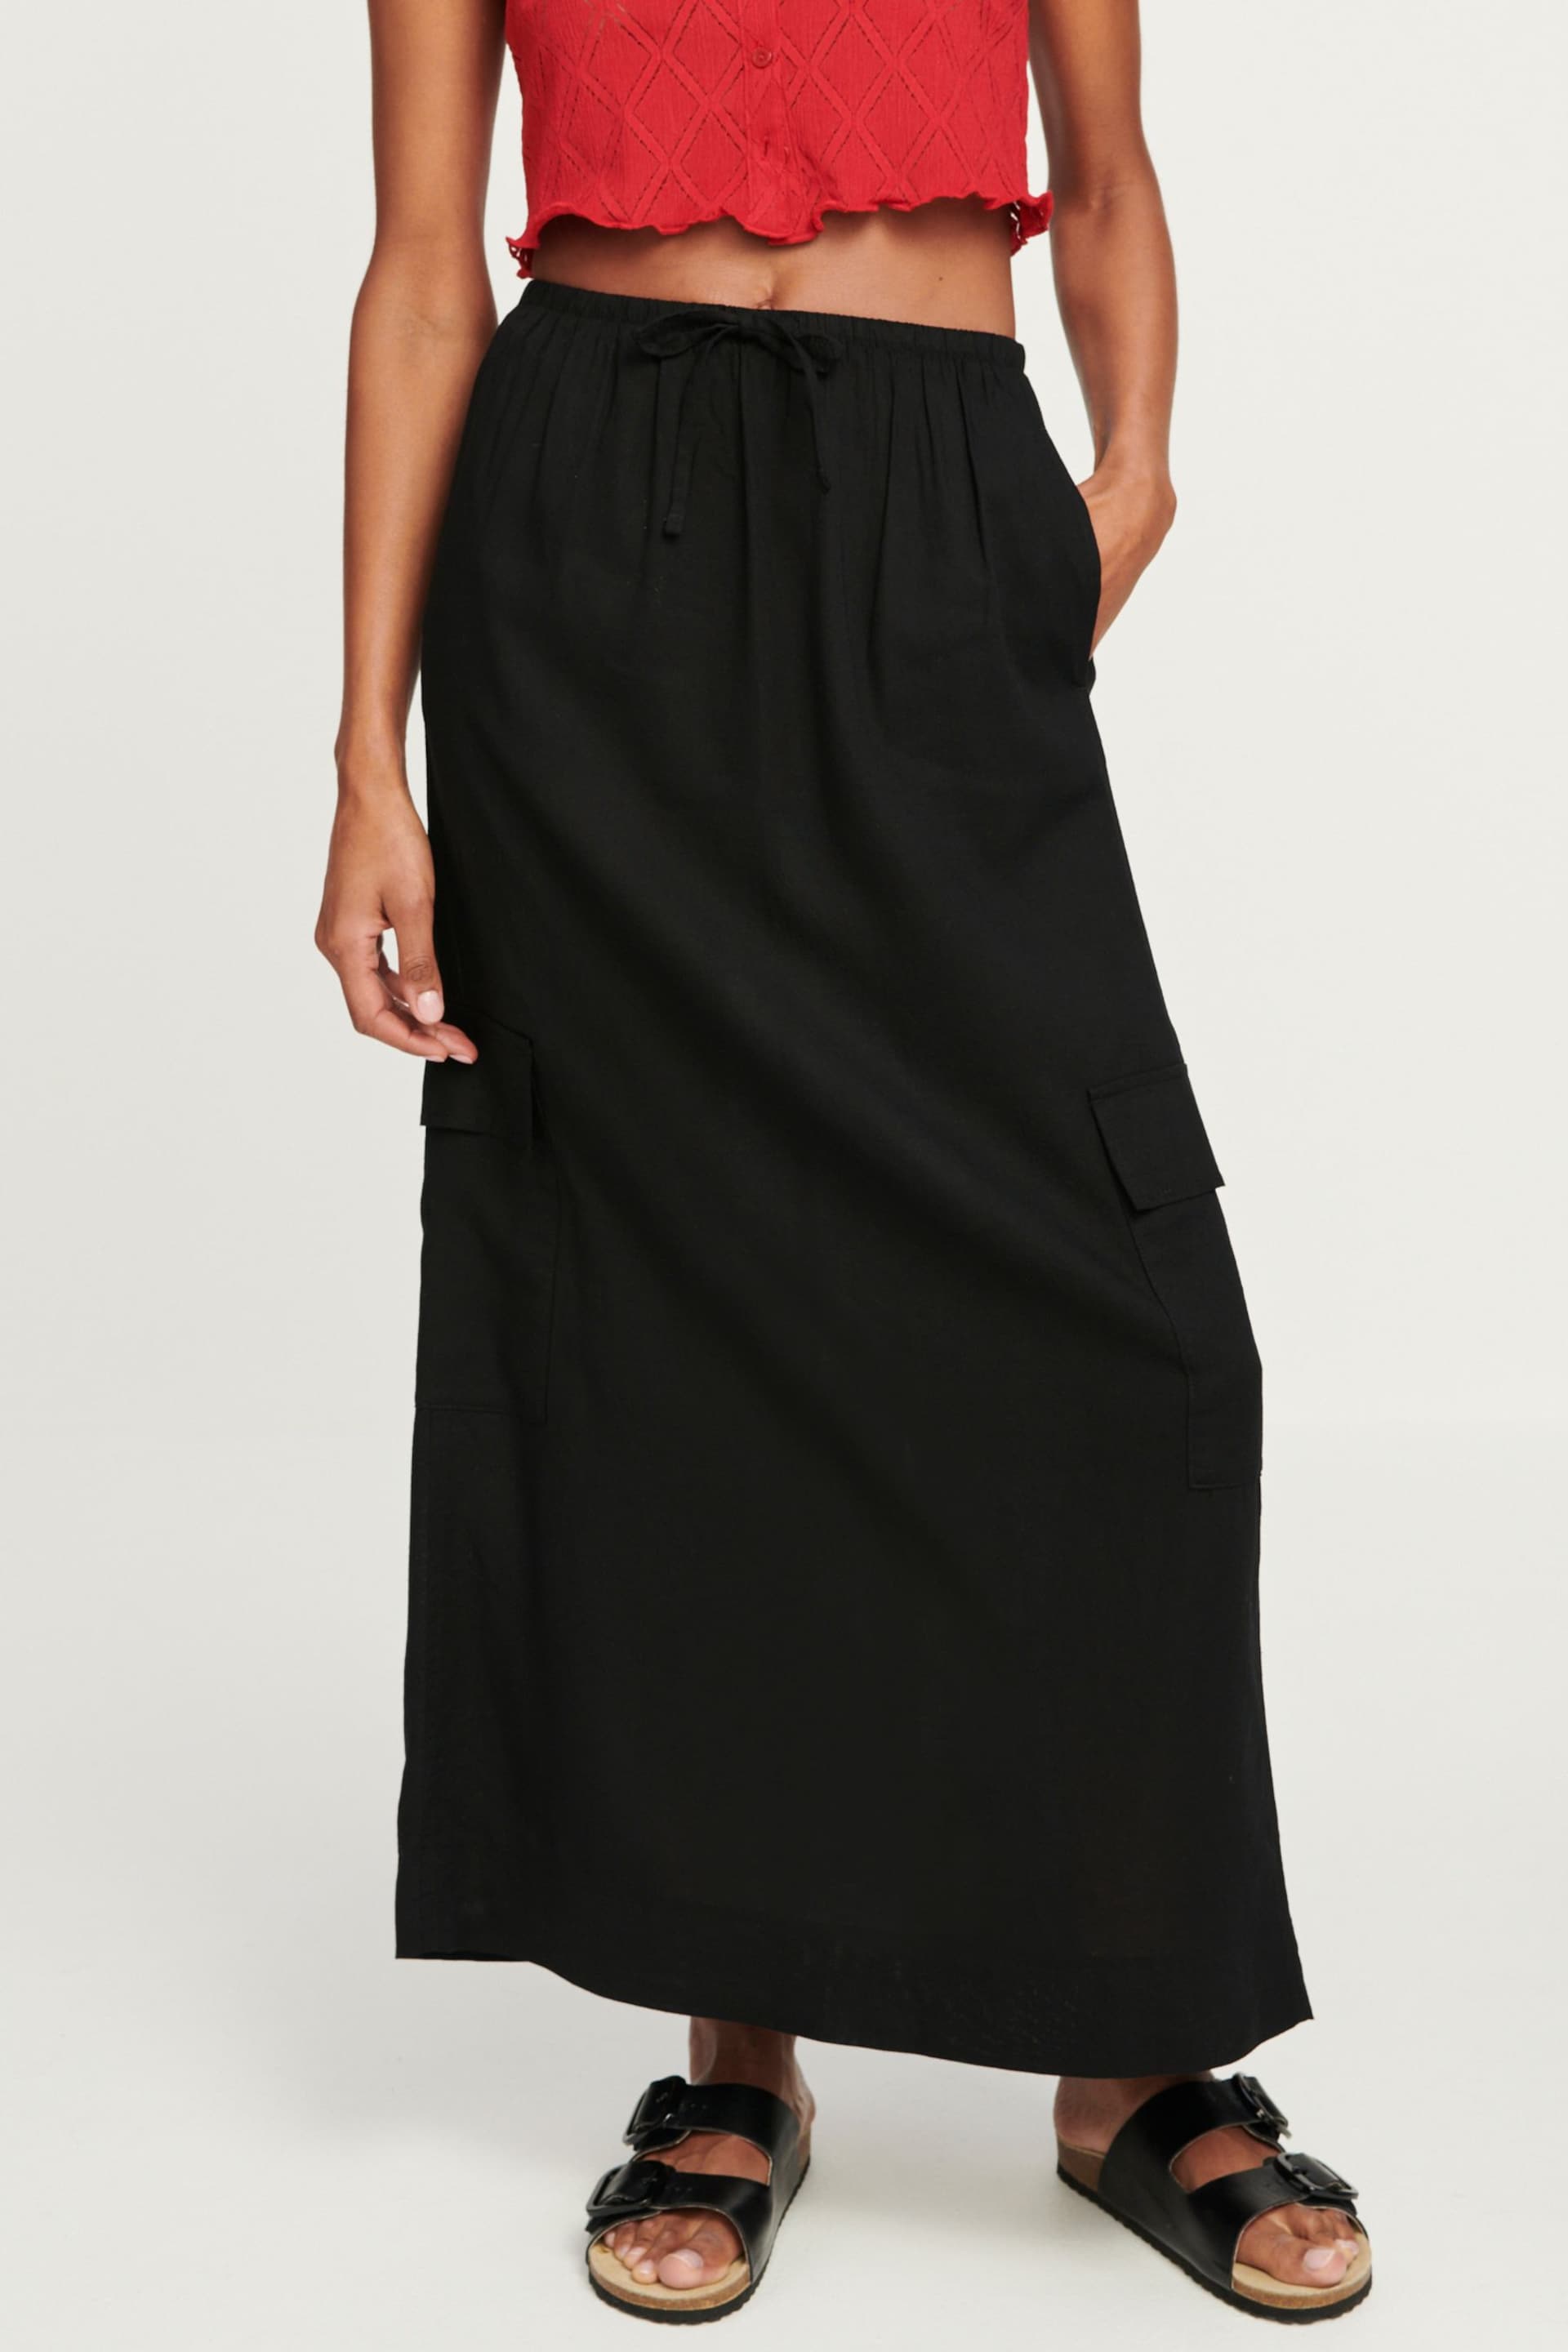 Black Column Midi Skirt with Linen - Image 3 of 7